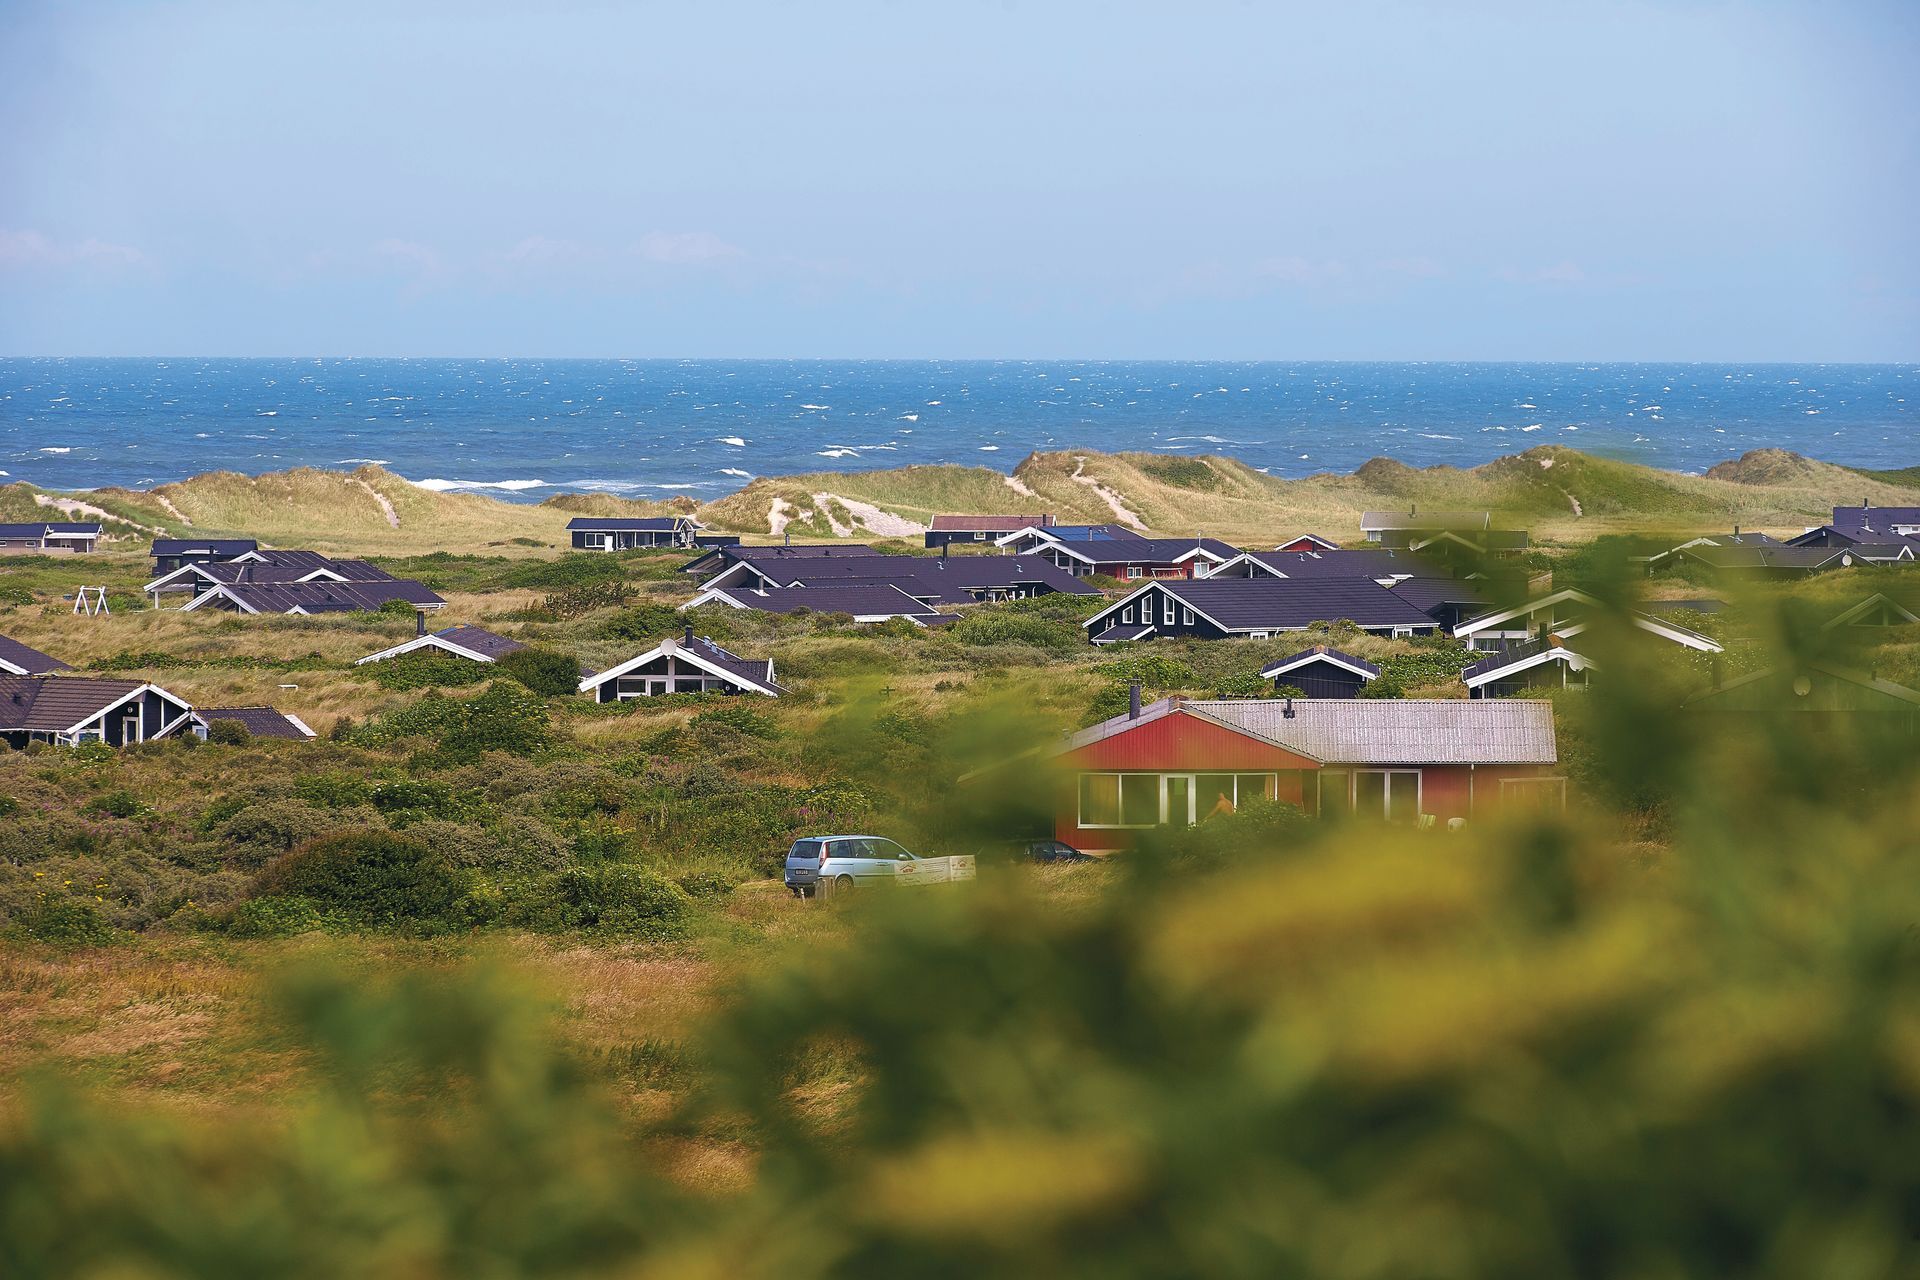 Et oversigtsbillede over et sommerhusområde med udsigt til havet